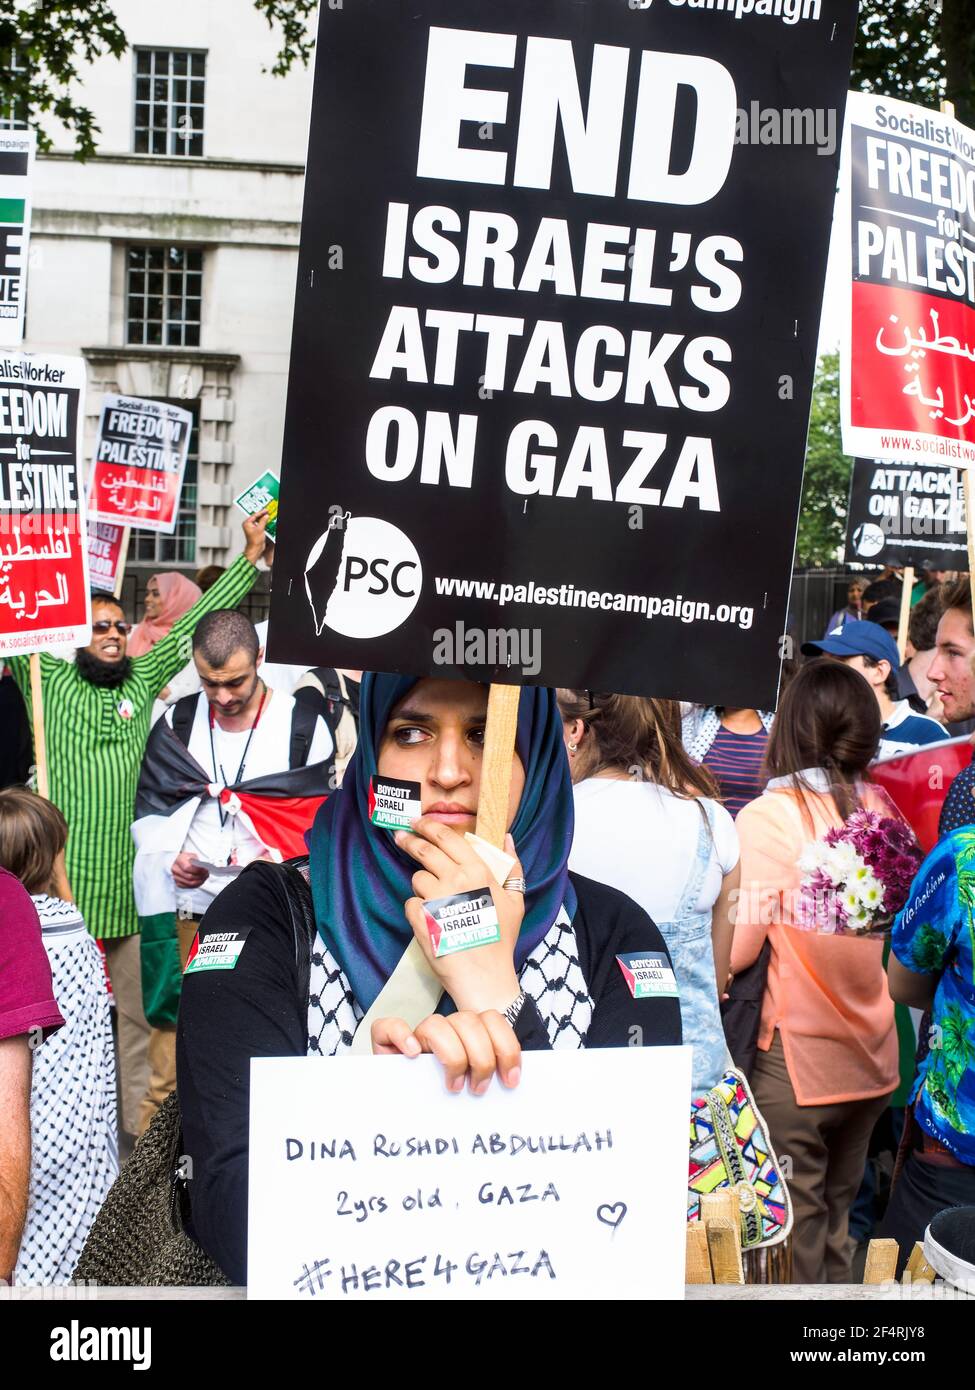 29th. Juli 2014 märz gegen den Zionismus - Protest gegen die Bombardierung von Gaza - London, England Stockfoto